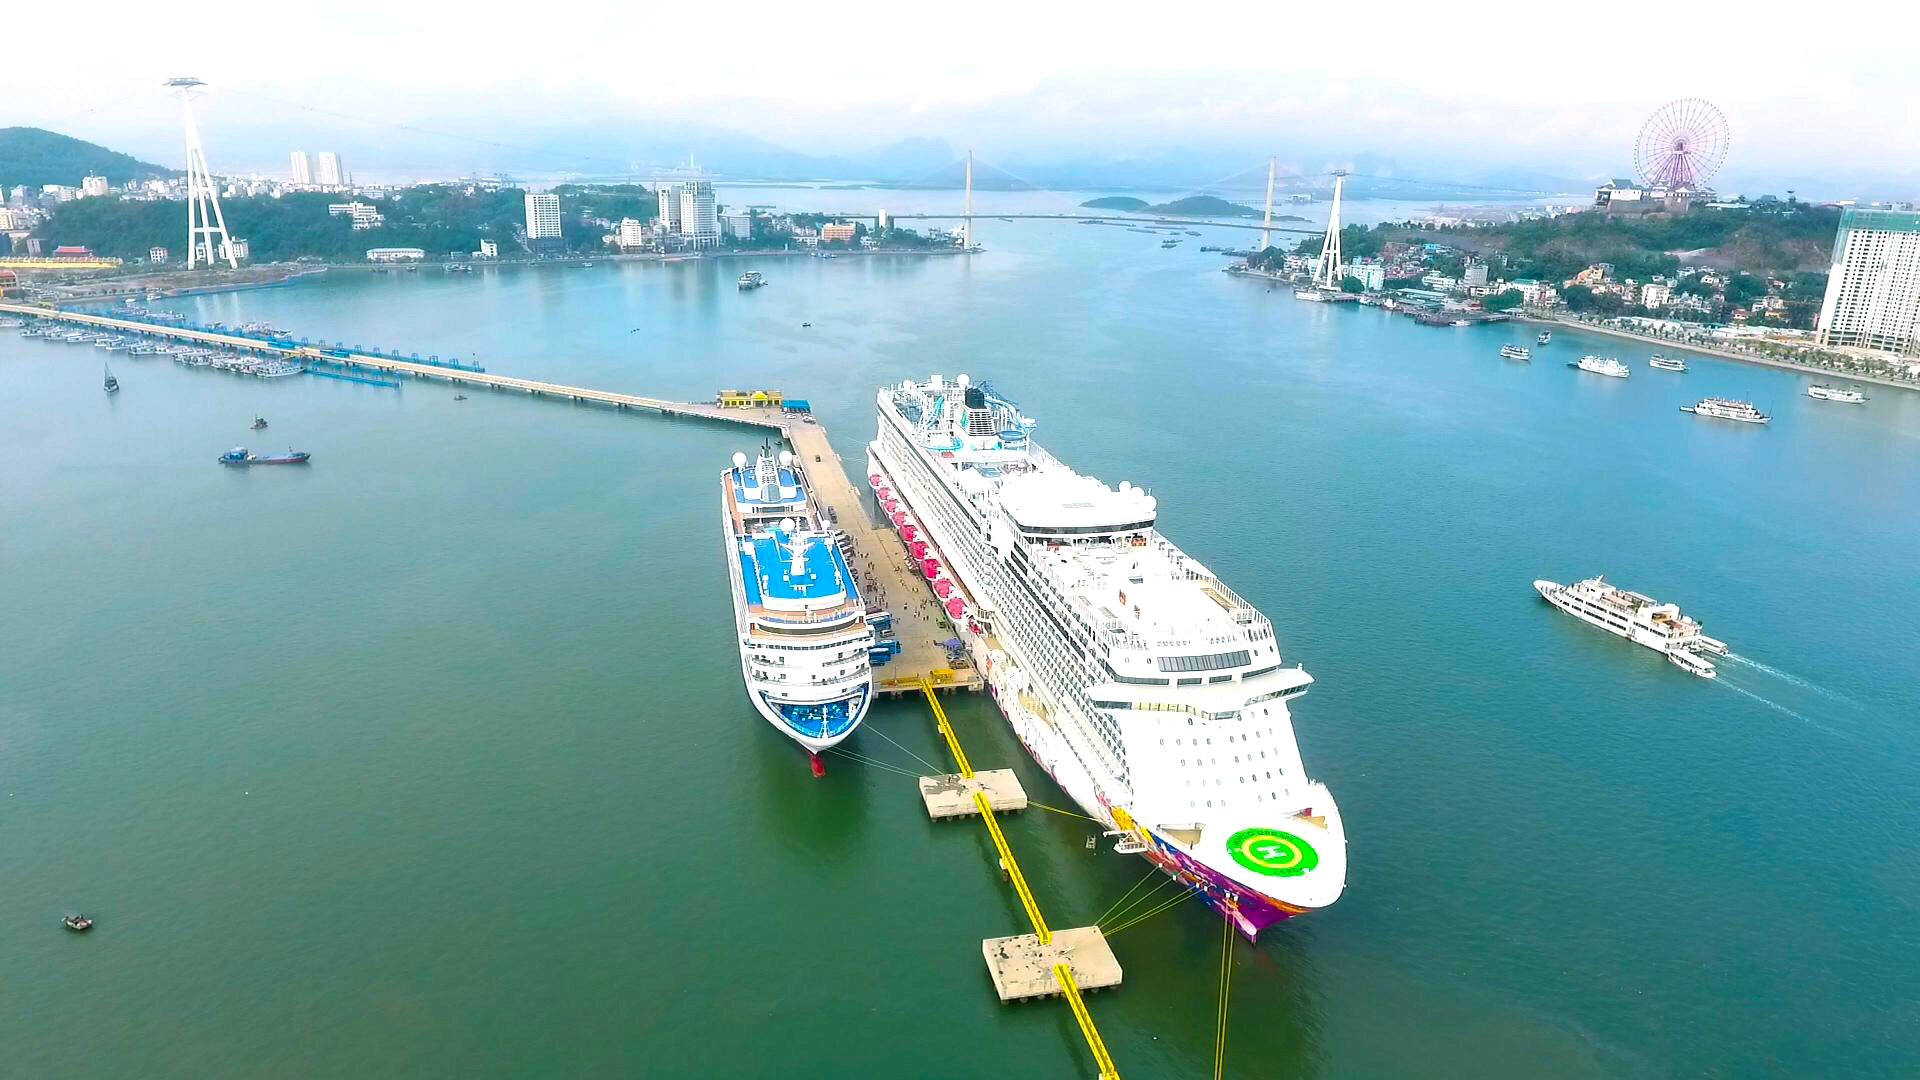 2 tàu biển quốc tế cao cấp World Dream thuộc hãng tàu Dream Cruise (Hong Kong) và Silver Sea Cruise (Mỹ) chở theo 4.000 du khách cập Cảng tàu khách quốc tế Hạ Long, ngày 18/12/2019.